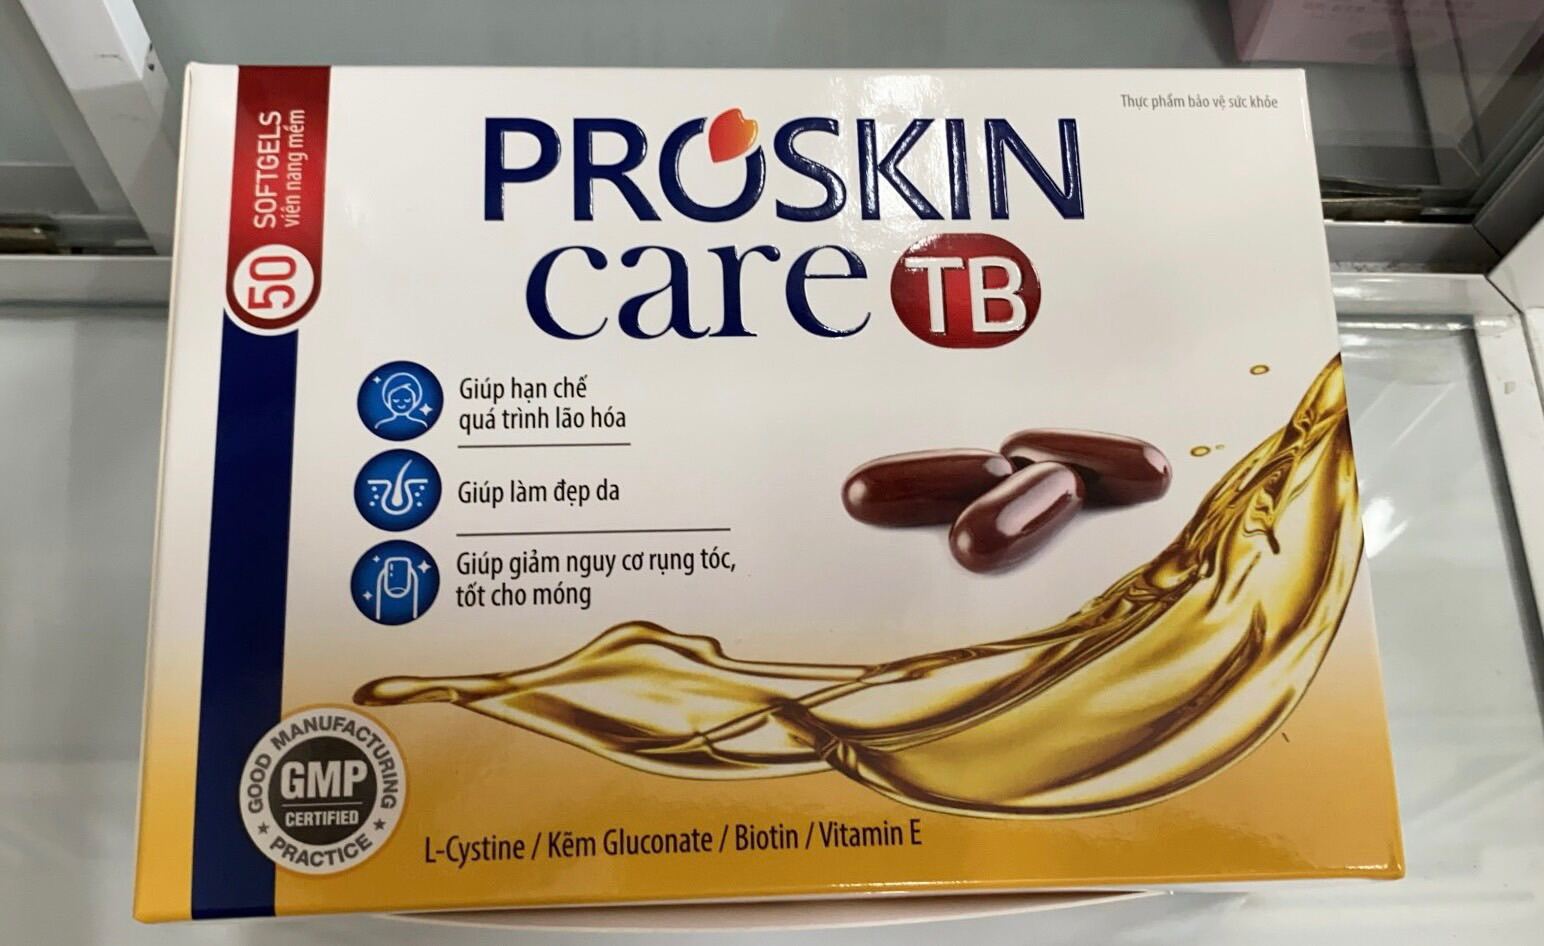 Proskincare TB thumbnail